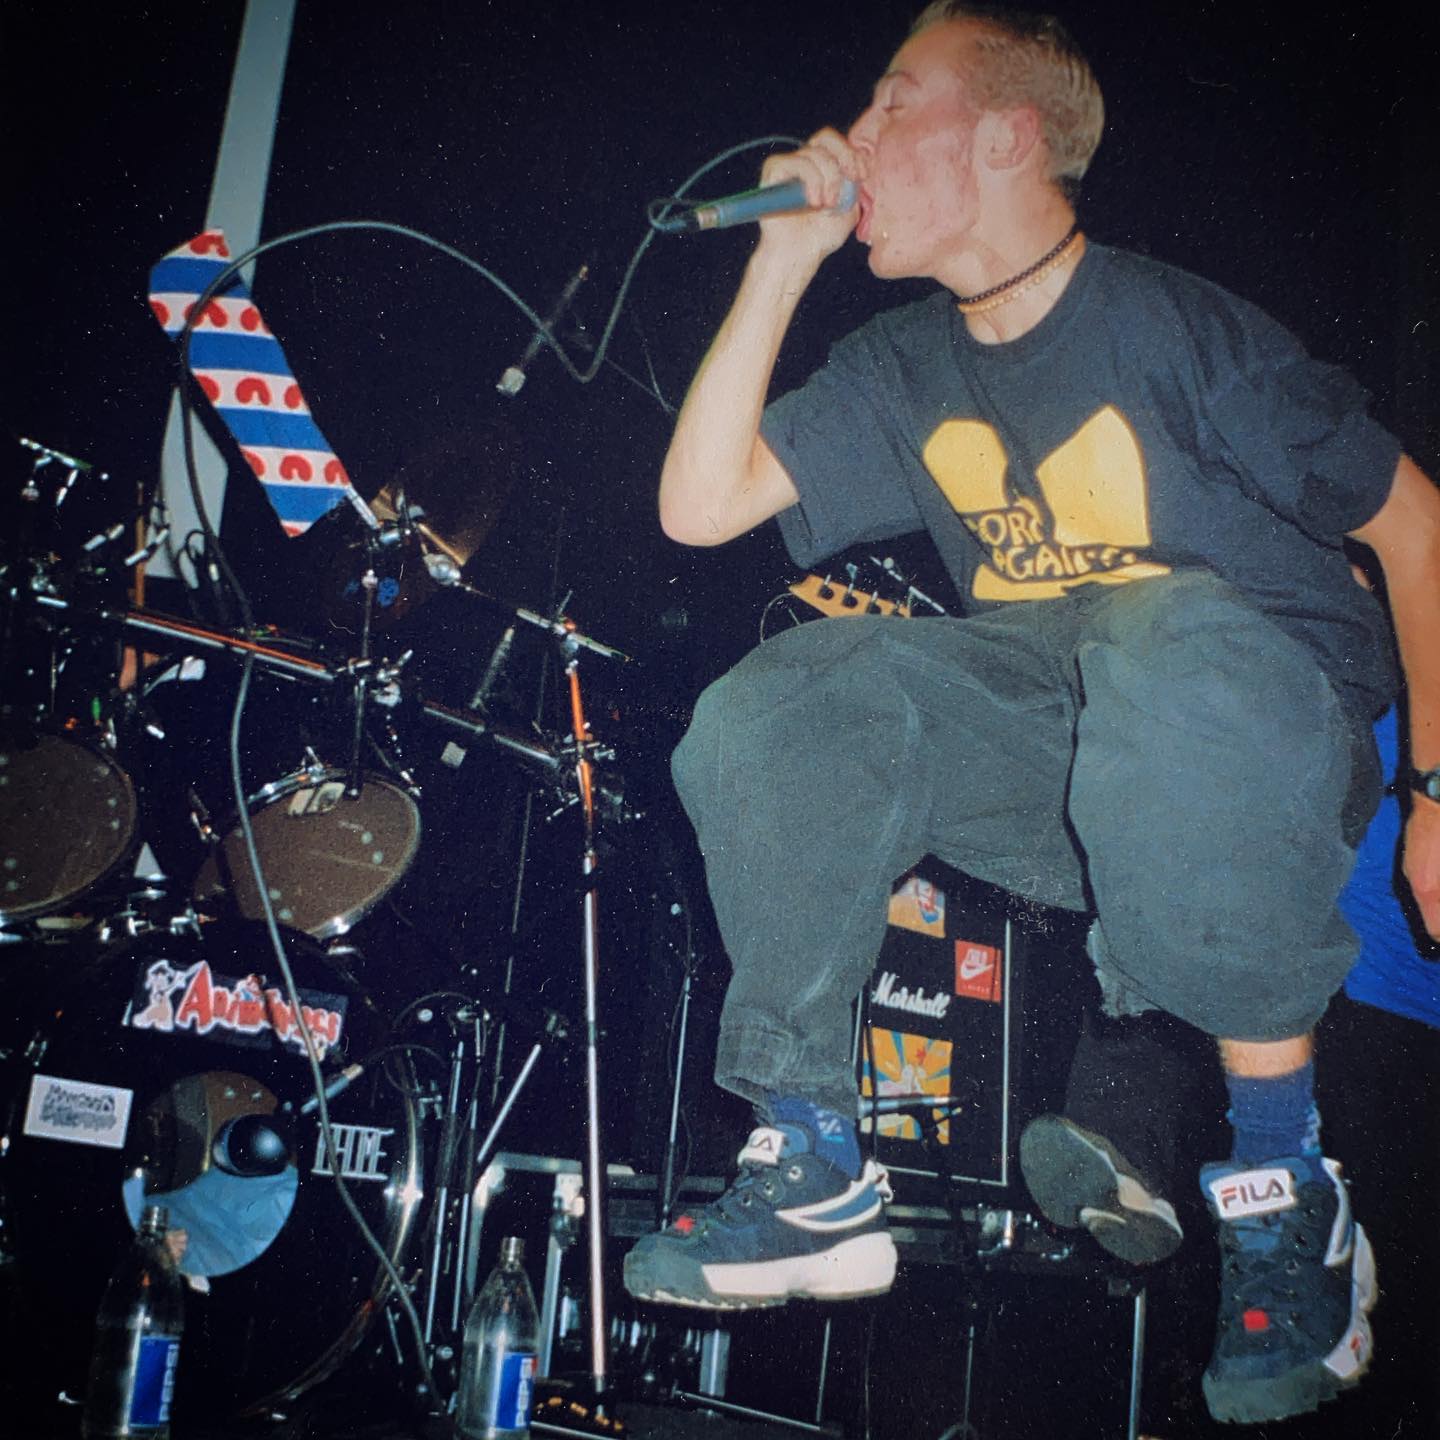 Spirit 84 - Hedon Zwolle (NL) - 14 November 1997 #hardcore #youthcrew #gigpic by @twentylandcrew